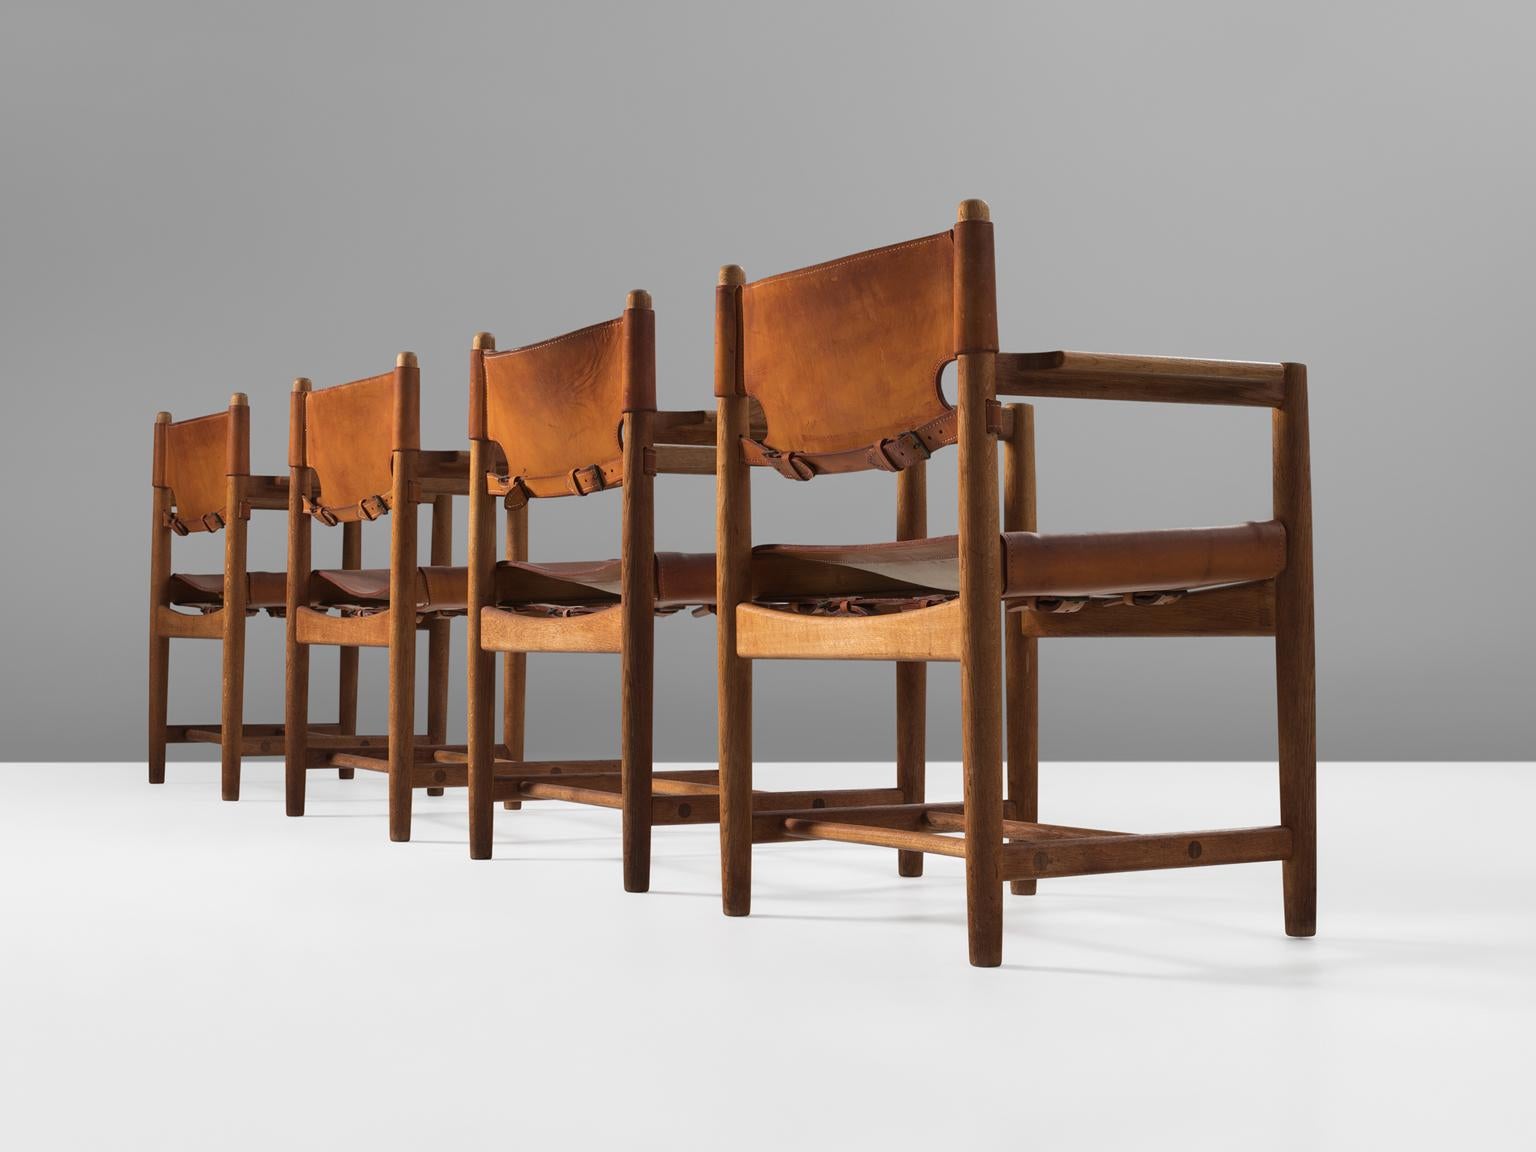 Børge Mogensen für Fredericia Stolefabrik, 4 Sessel Modell 3238, aus Eiche und Leder, Dänemark, 1964. 

Satz von vier Sesseln aus massiver Eiche. Diese Stühle erinnern an die klassischen klappbaren 